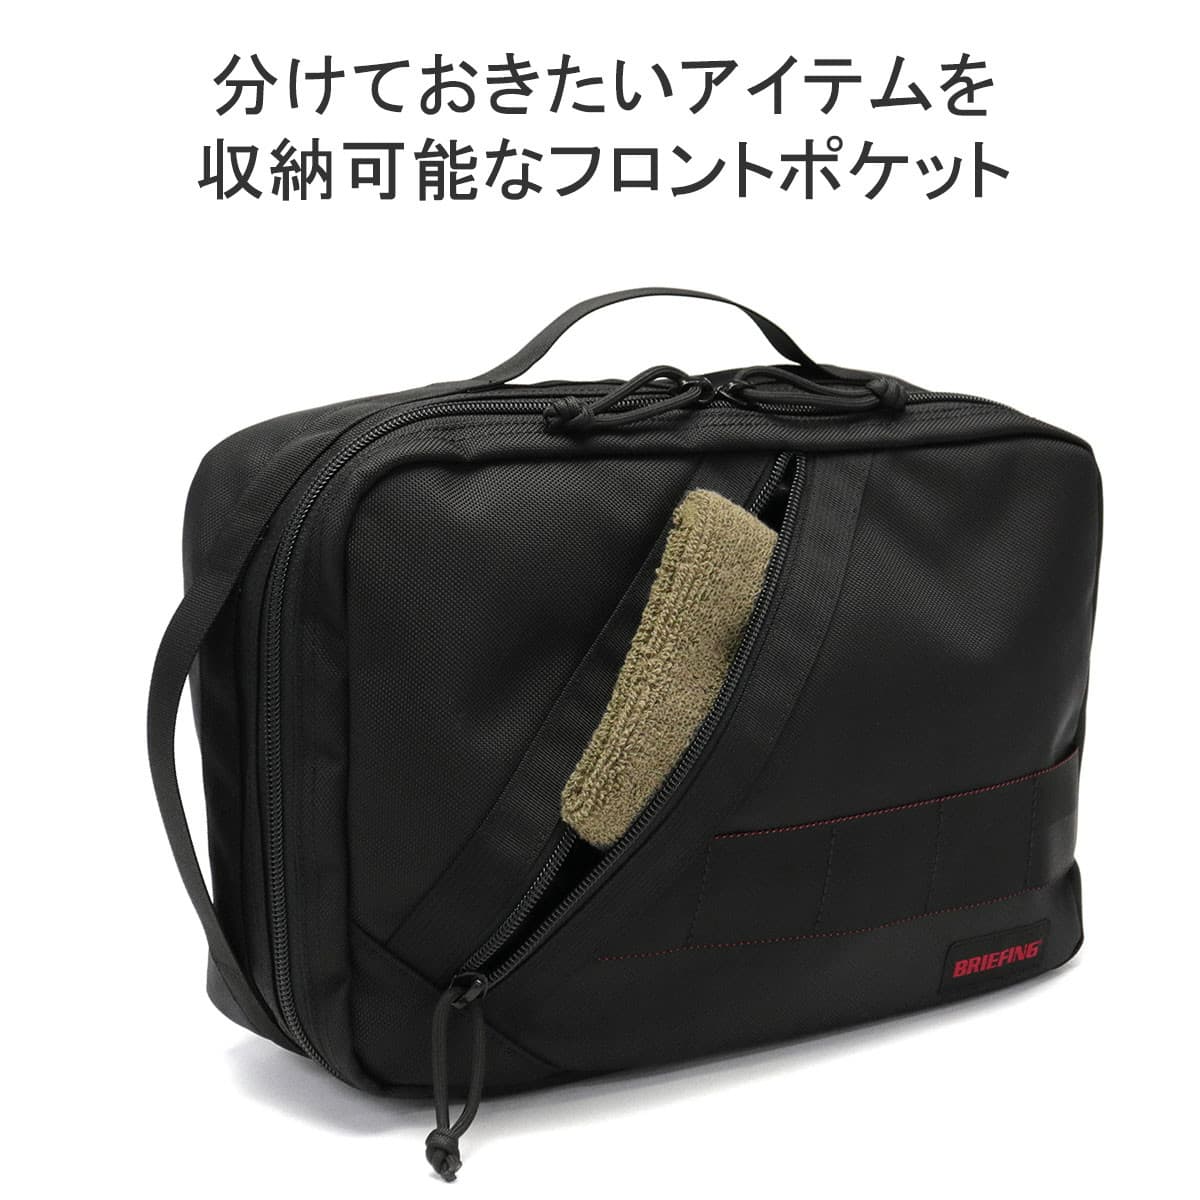 【美品大容量】BRIEFING JET TRIP 3WAY Lサイズ 黒 バッグ